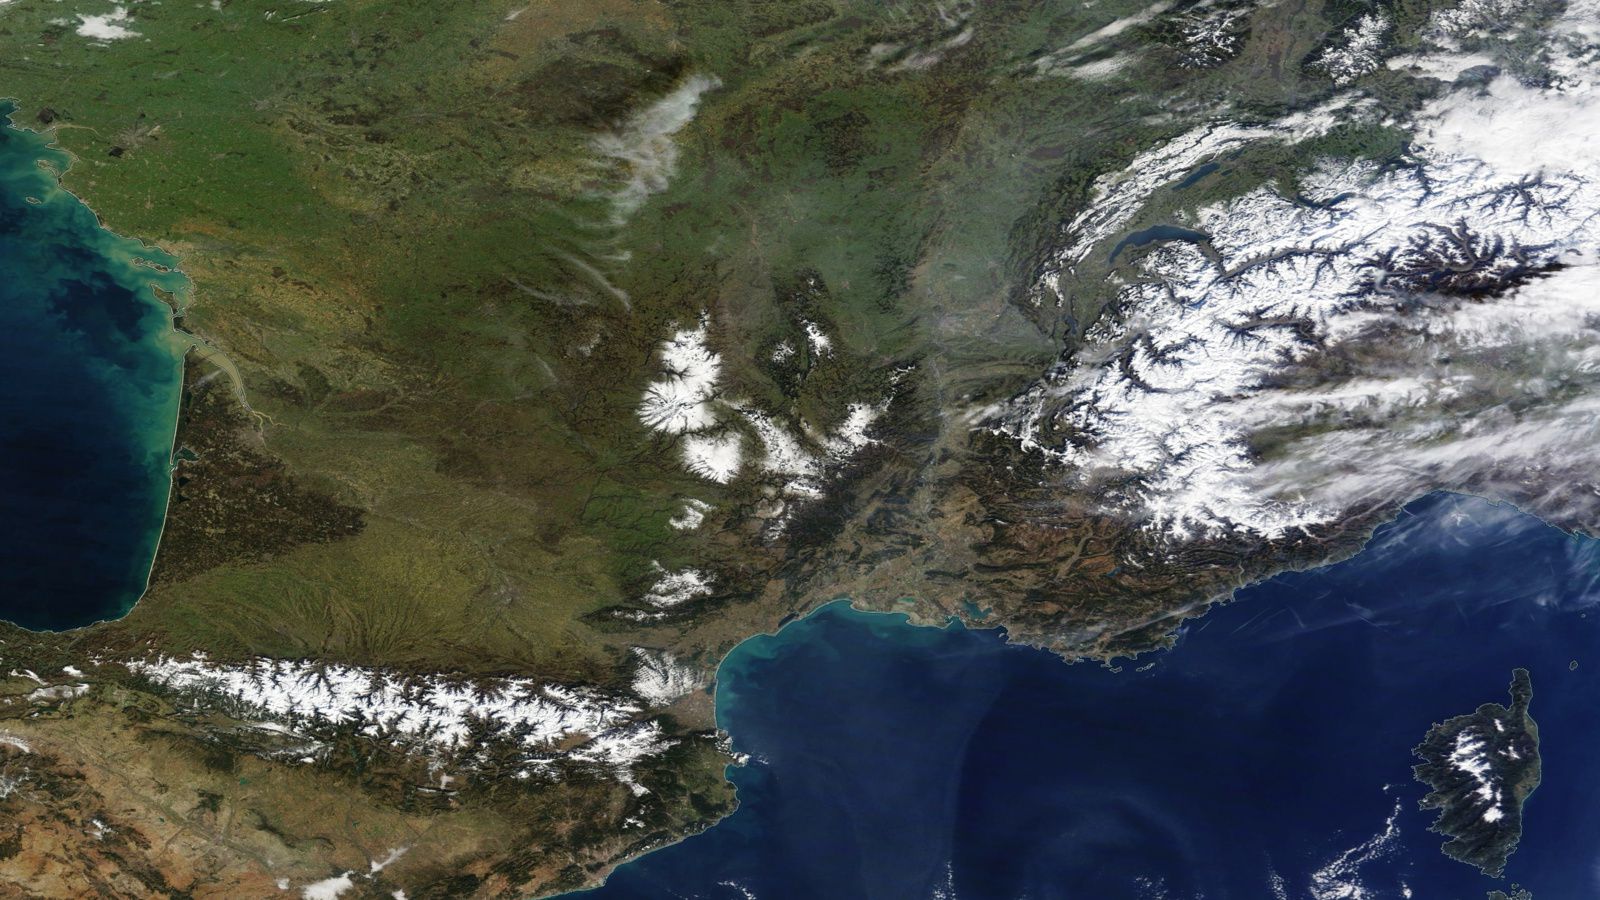 Neige - Pyrénées - Massif central - Alpes - Noël - Vacances de février - Satellites d'observation - MODIS - Terra - Aqua - Earth observation - Snow